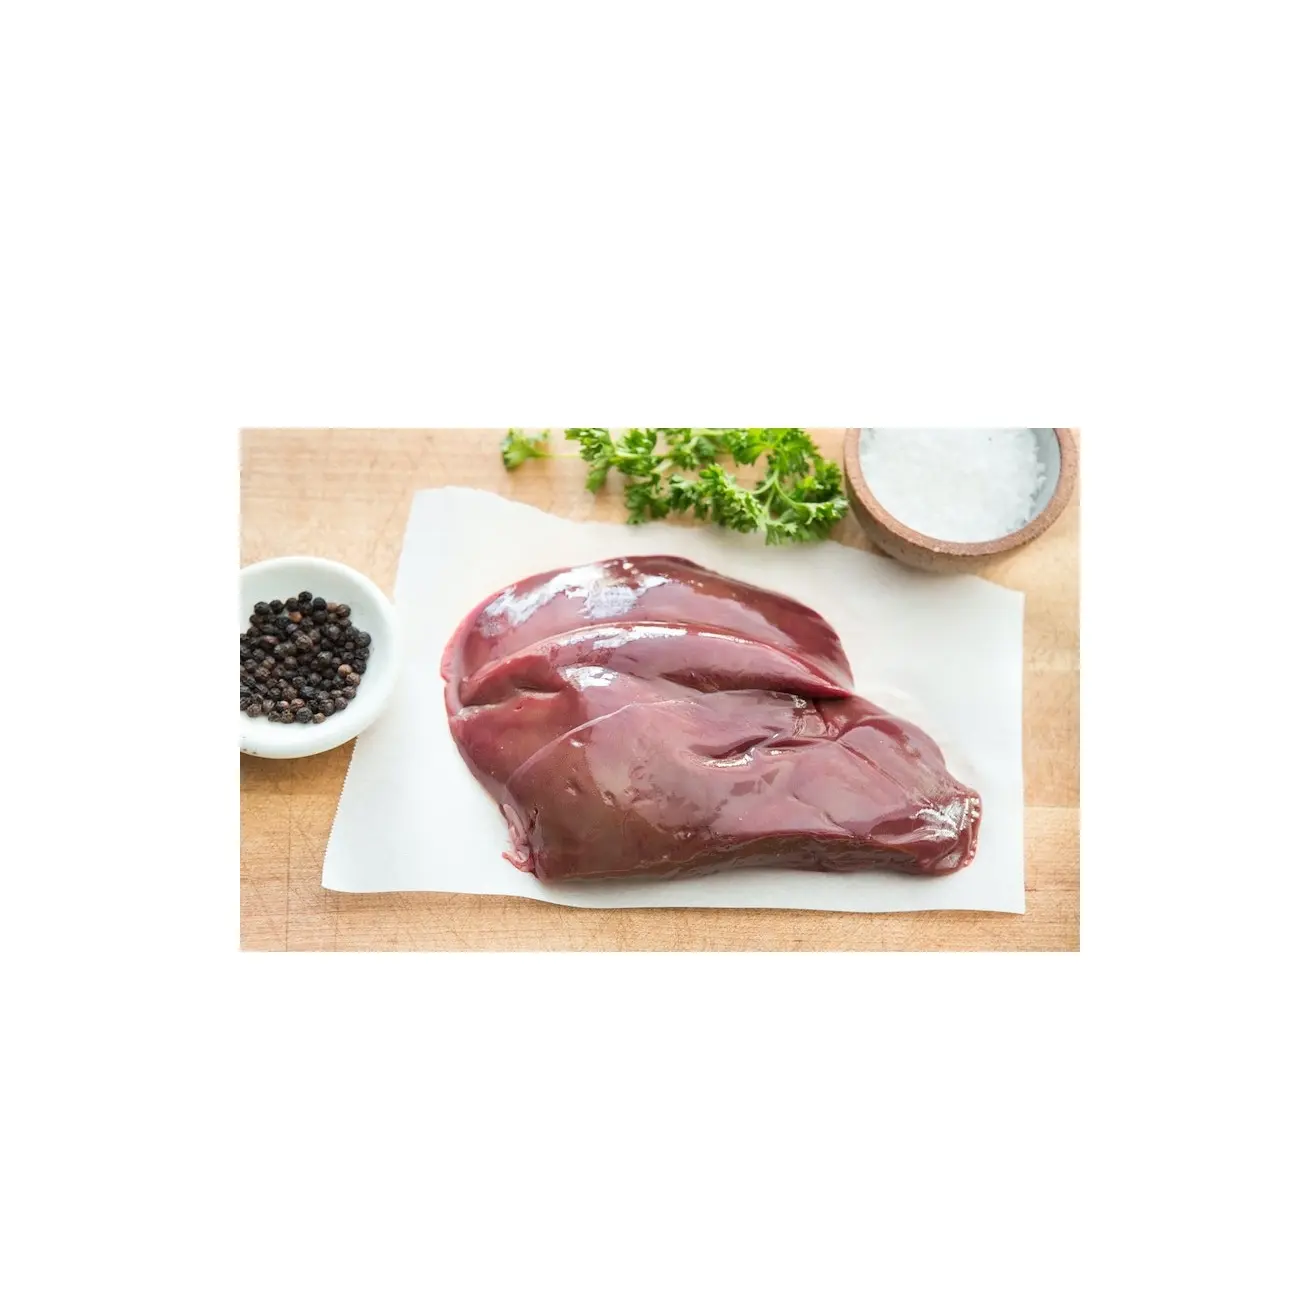 أعلى مبيعًا كبد خنزير عضوي مجمد، كلية، قلب لحم بكميات كبيرة